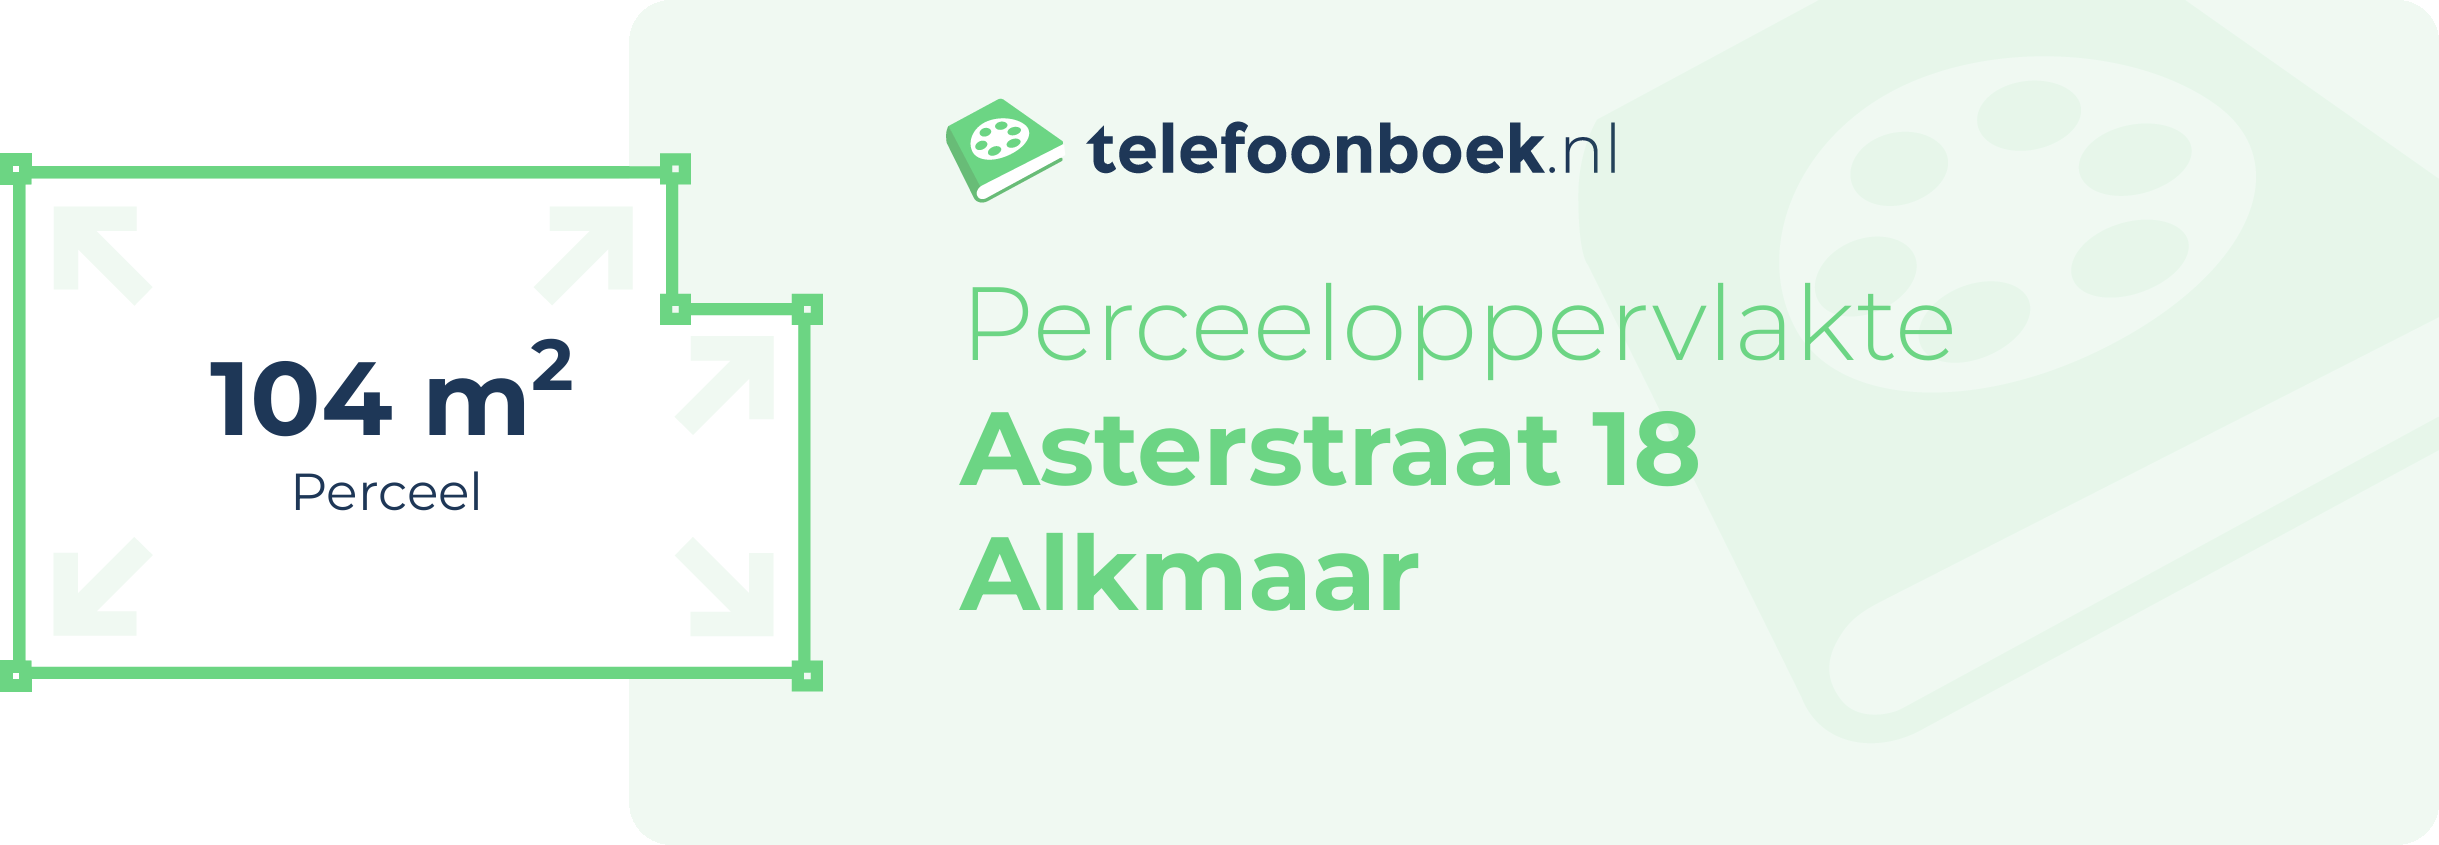 Perceeloppervlakte Asterstraat 18 Alkmaar